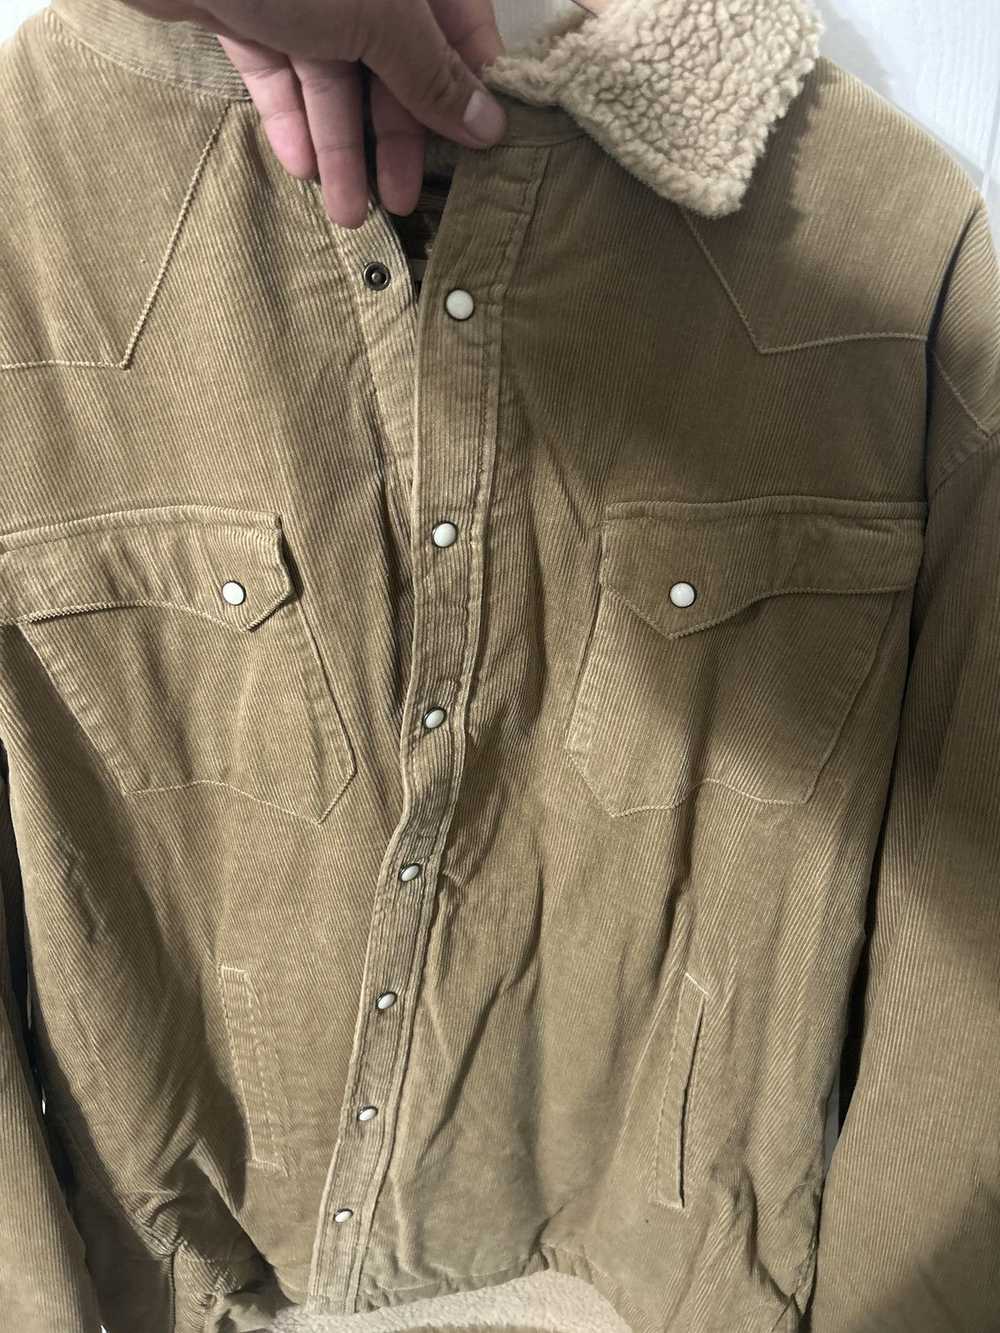 Taylor Stitch Wester shirt jacket corduroy - image 3